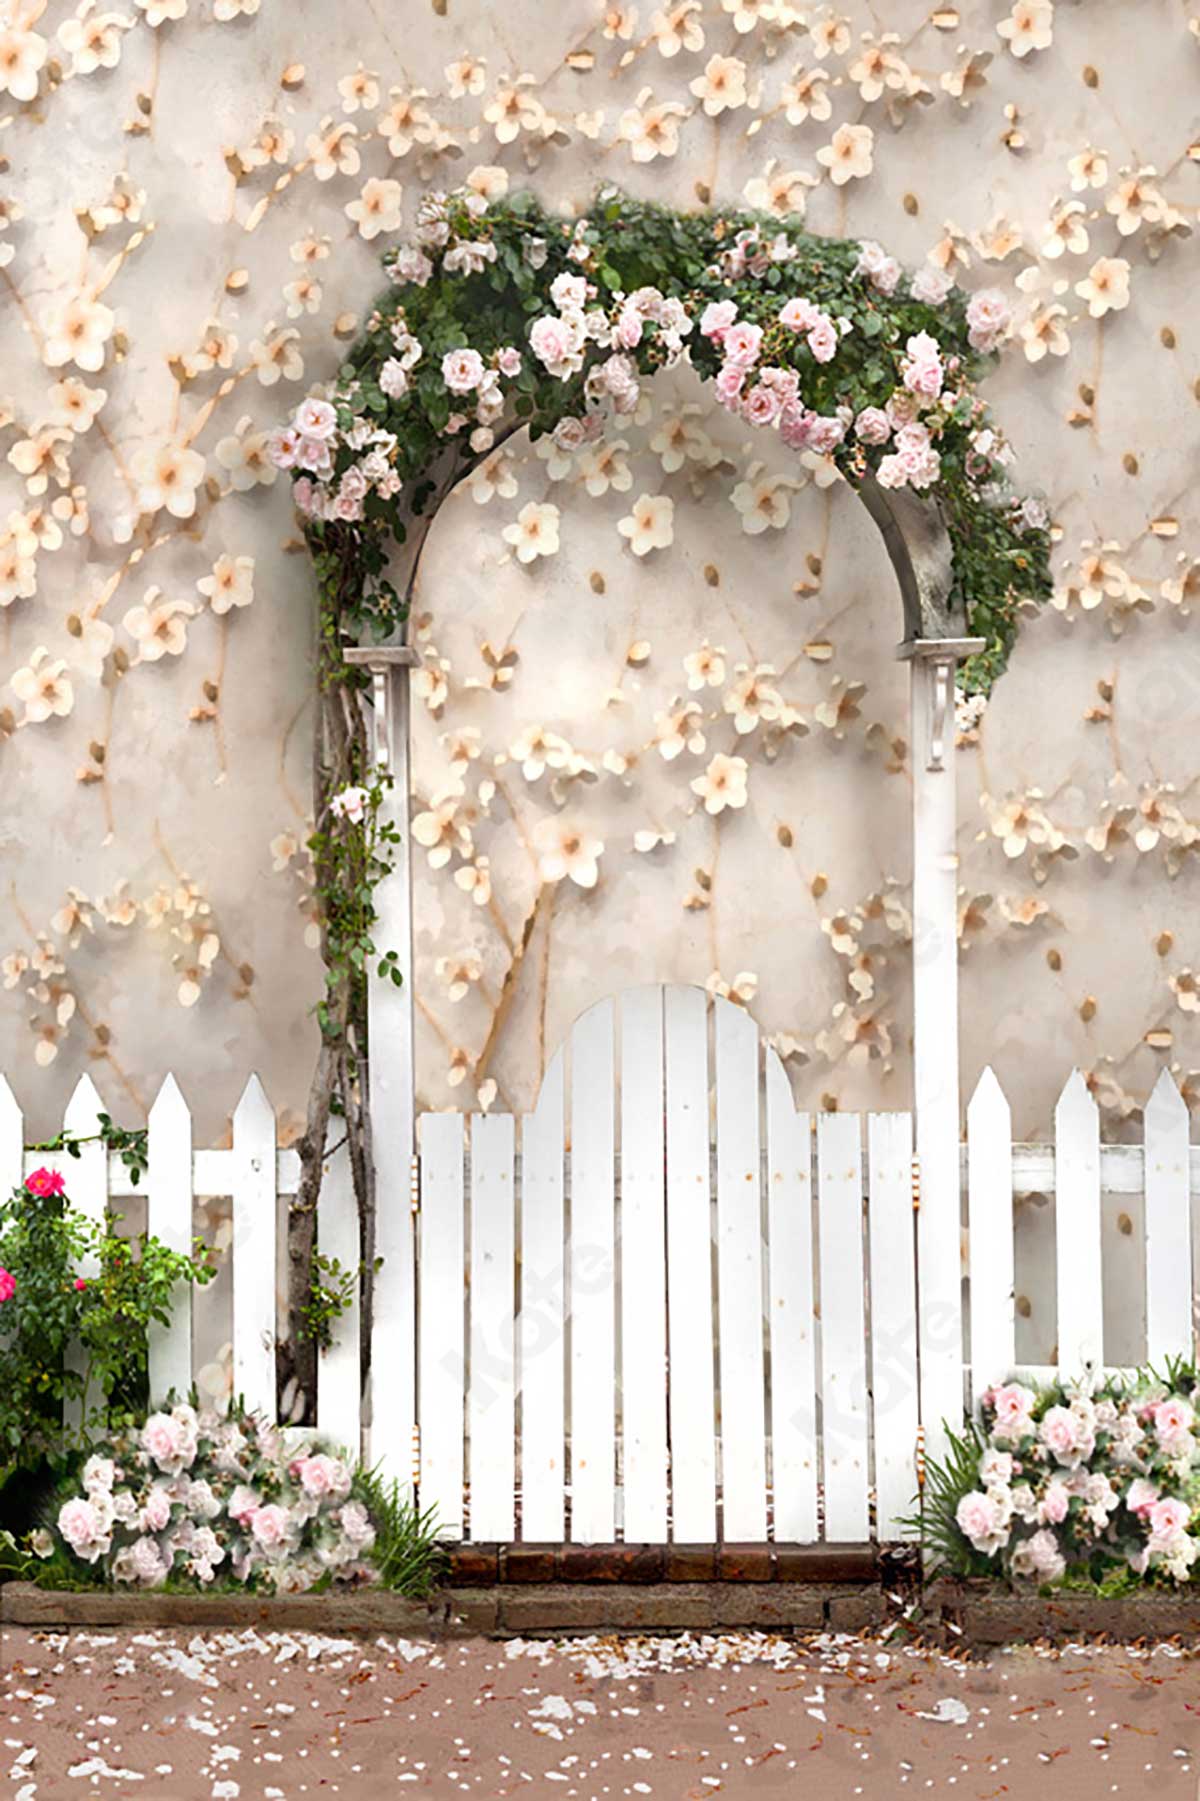 Màn hình nền hoa và cổng hoa Kate Spring/Ngày của Mẹ - một sự kết hợp đẹp mắt giữa tinh thần mùa xuân và tình yêu đến mẹ của bạn. Hãy thưởng thức những hình ảnh tuyệt đẹp về các loài hoa đầy màu sắc và những cổng hoa trang trí độc đáo để tạo nên không gian trang trọng, ngọt ngào cho ngày đặc biệt của bạn.